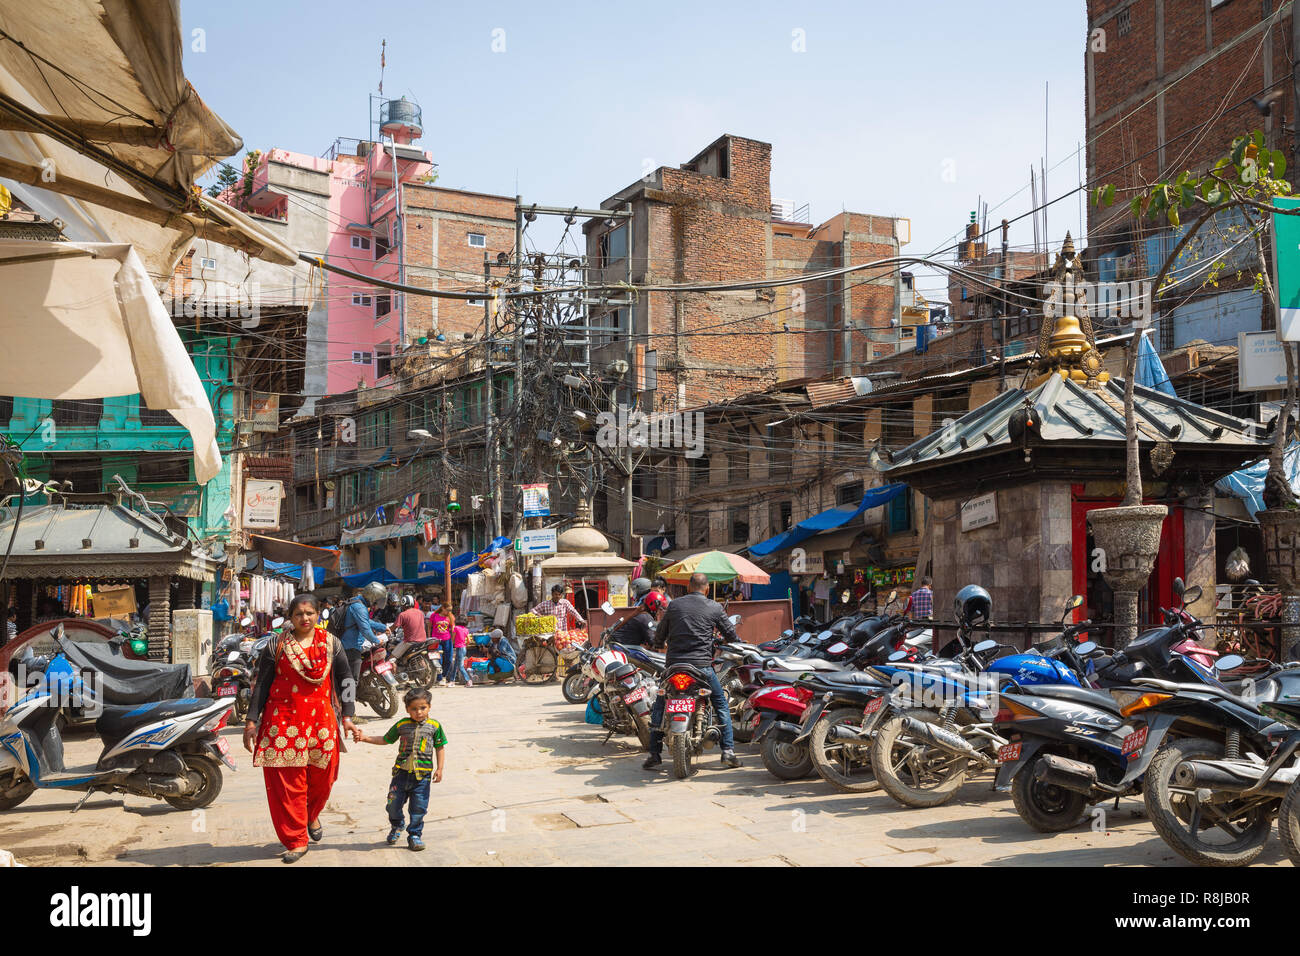 People walking through urban shopping area in Kathmandu, Nepal Stock Photo